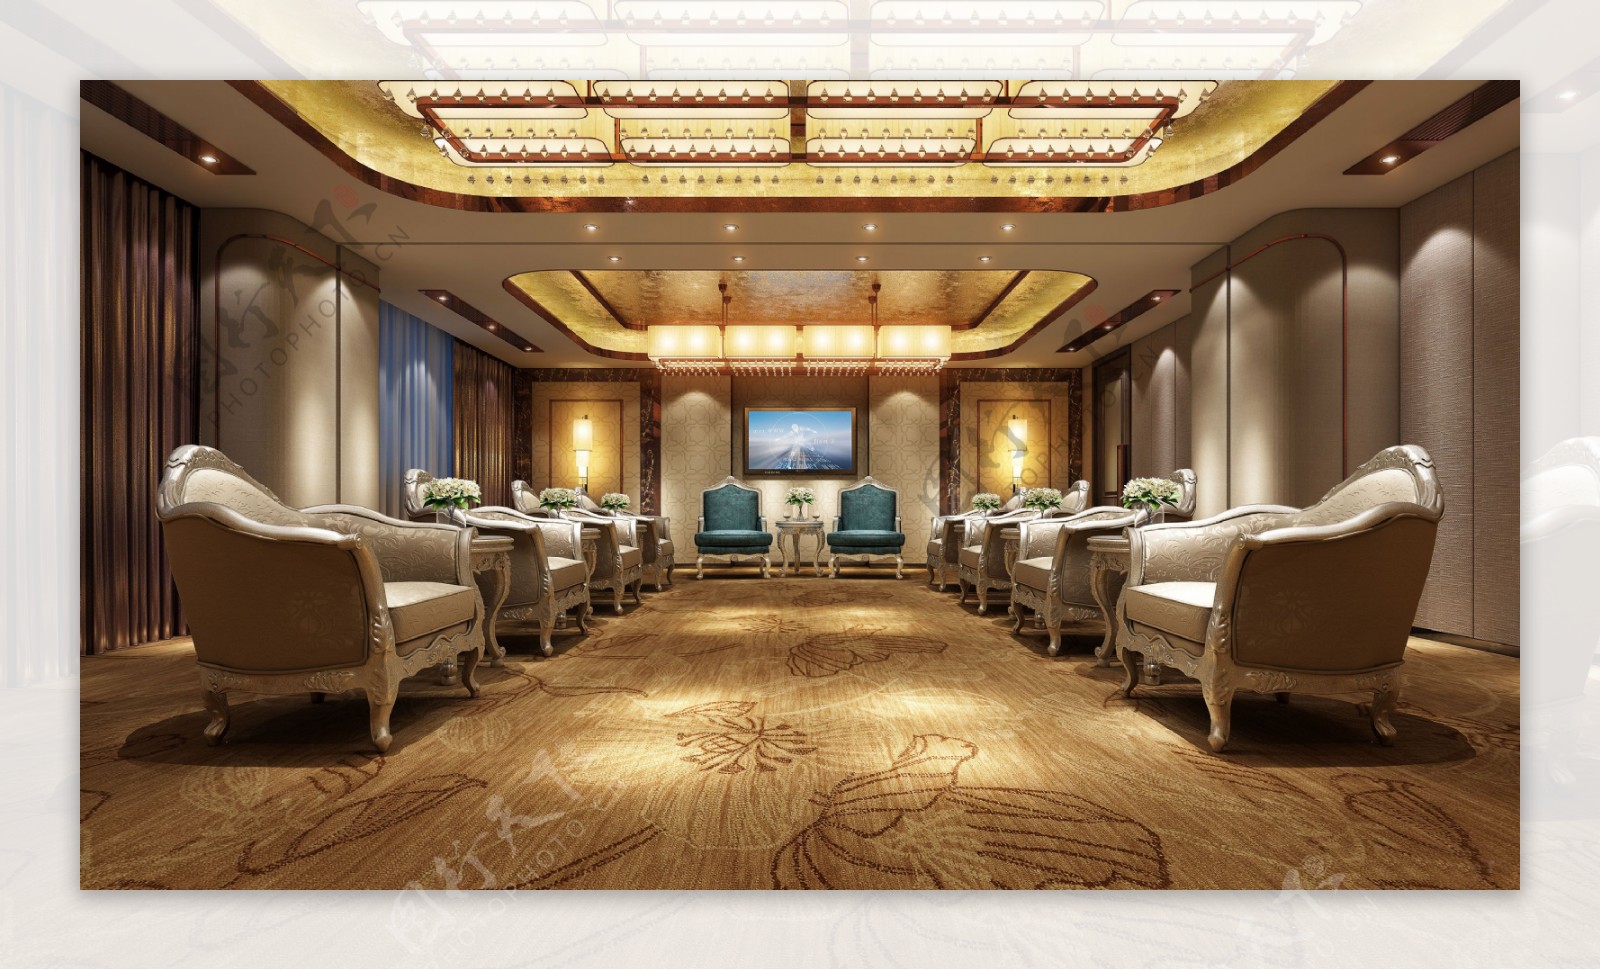 现代经典酒店会议室金色地毯工装装修效果图